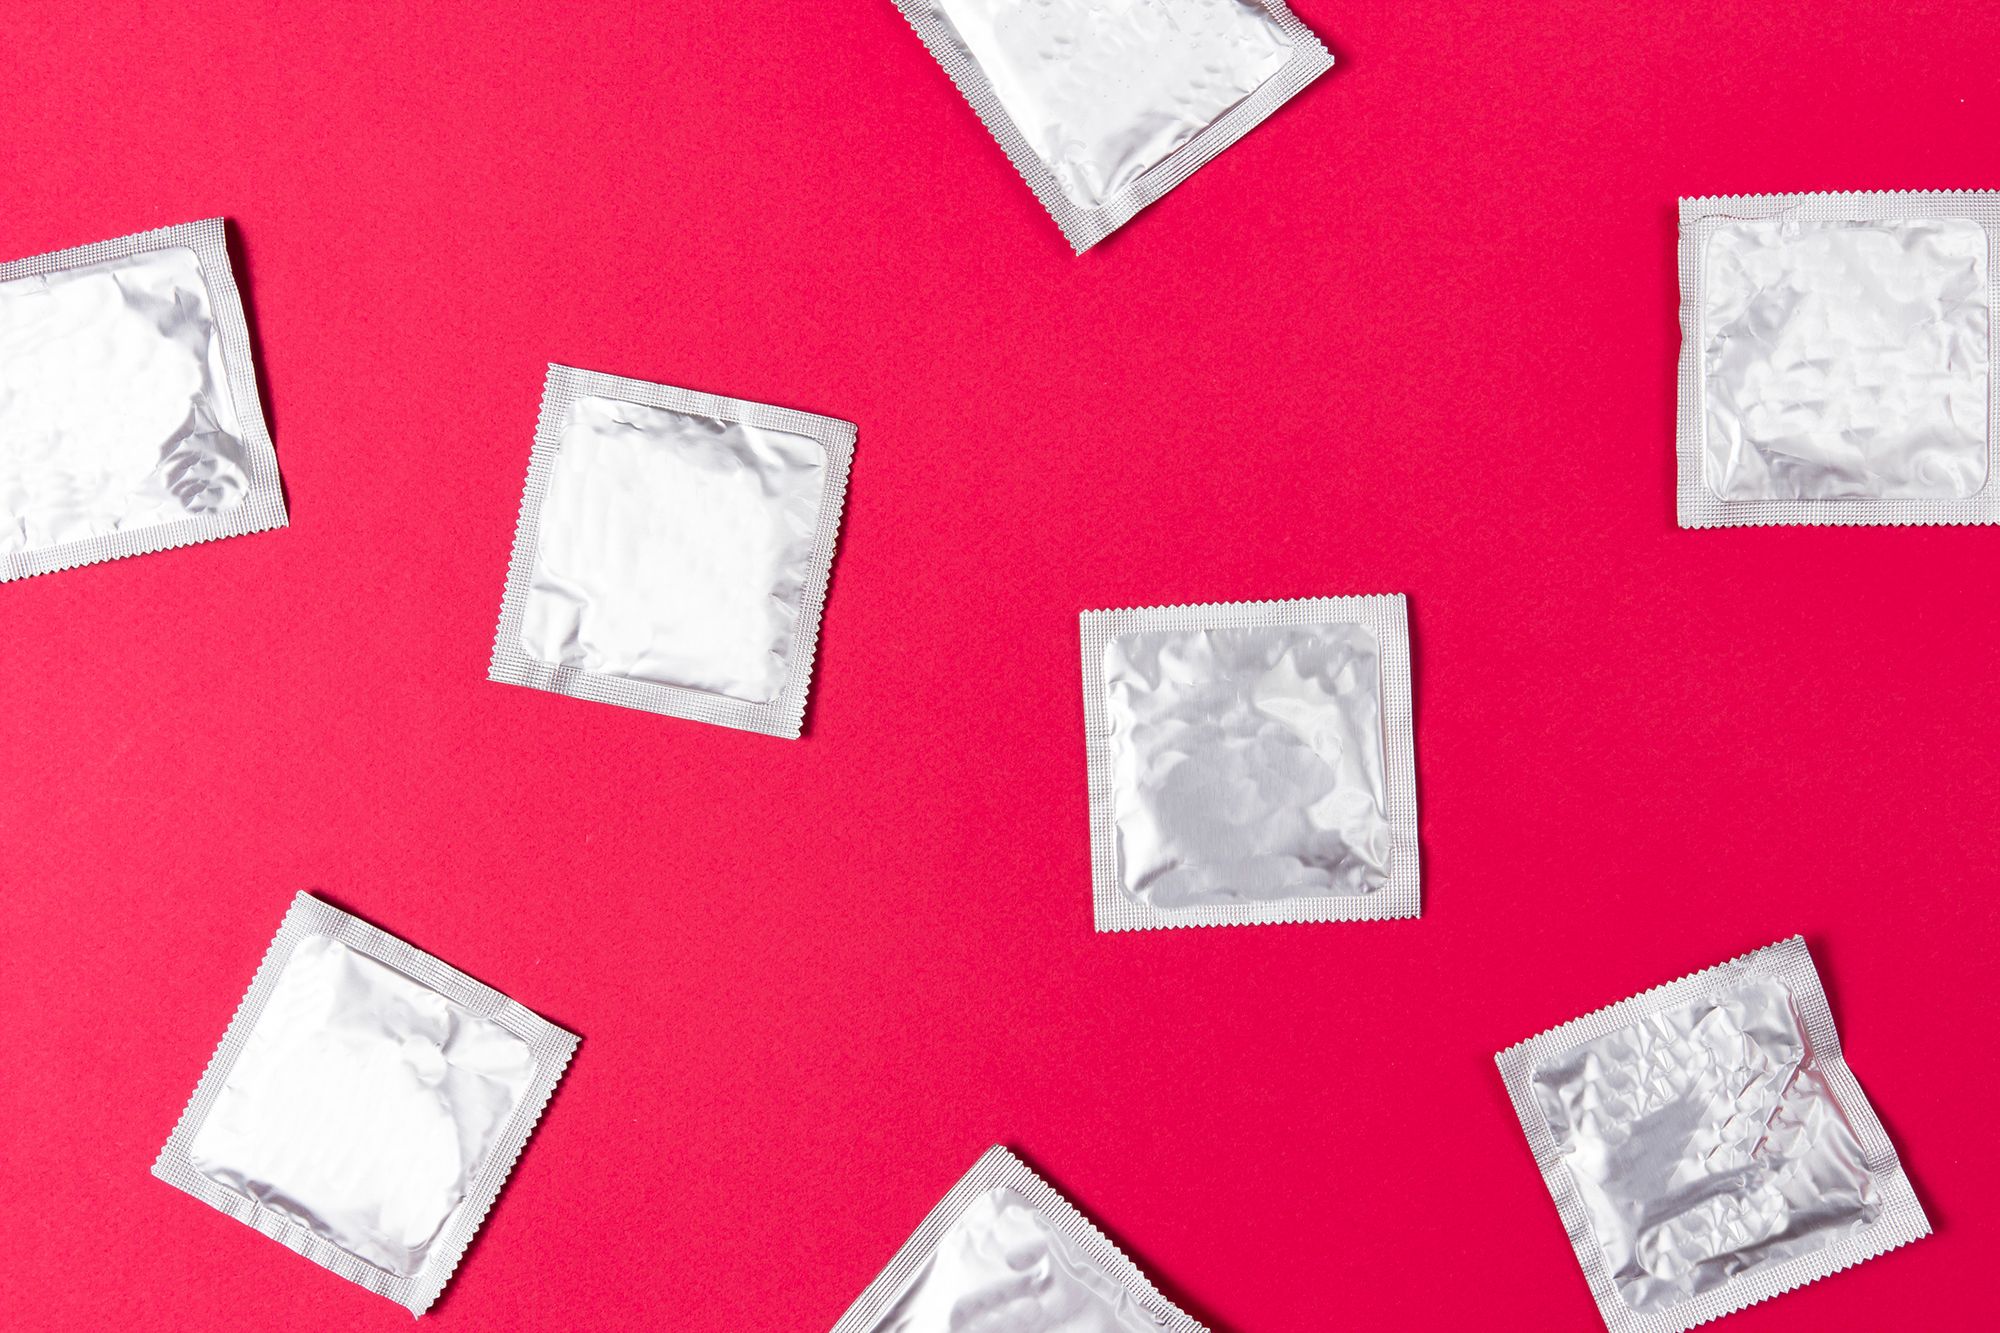 Silberne Kondomverpackungen auf rotem Hintergrund